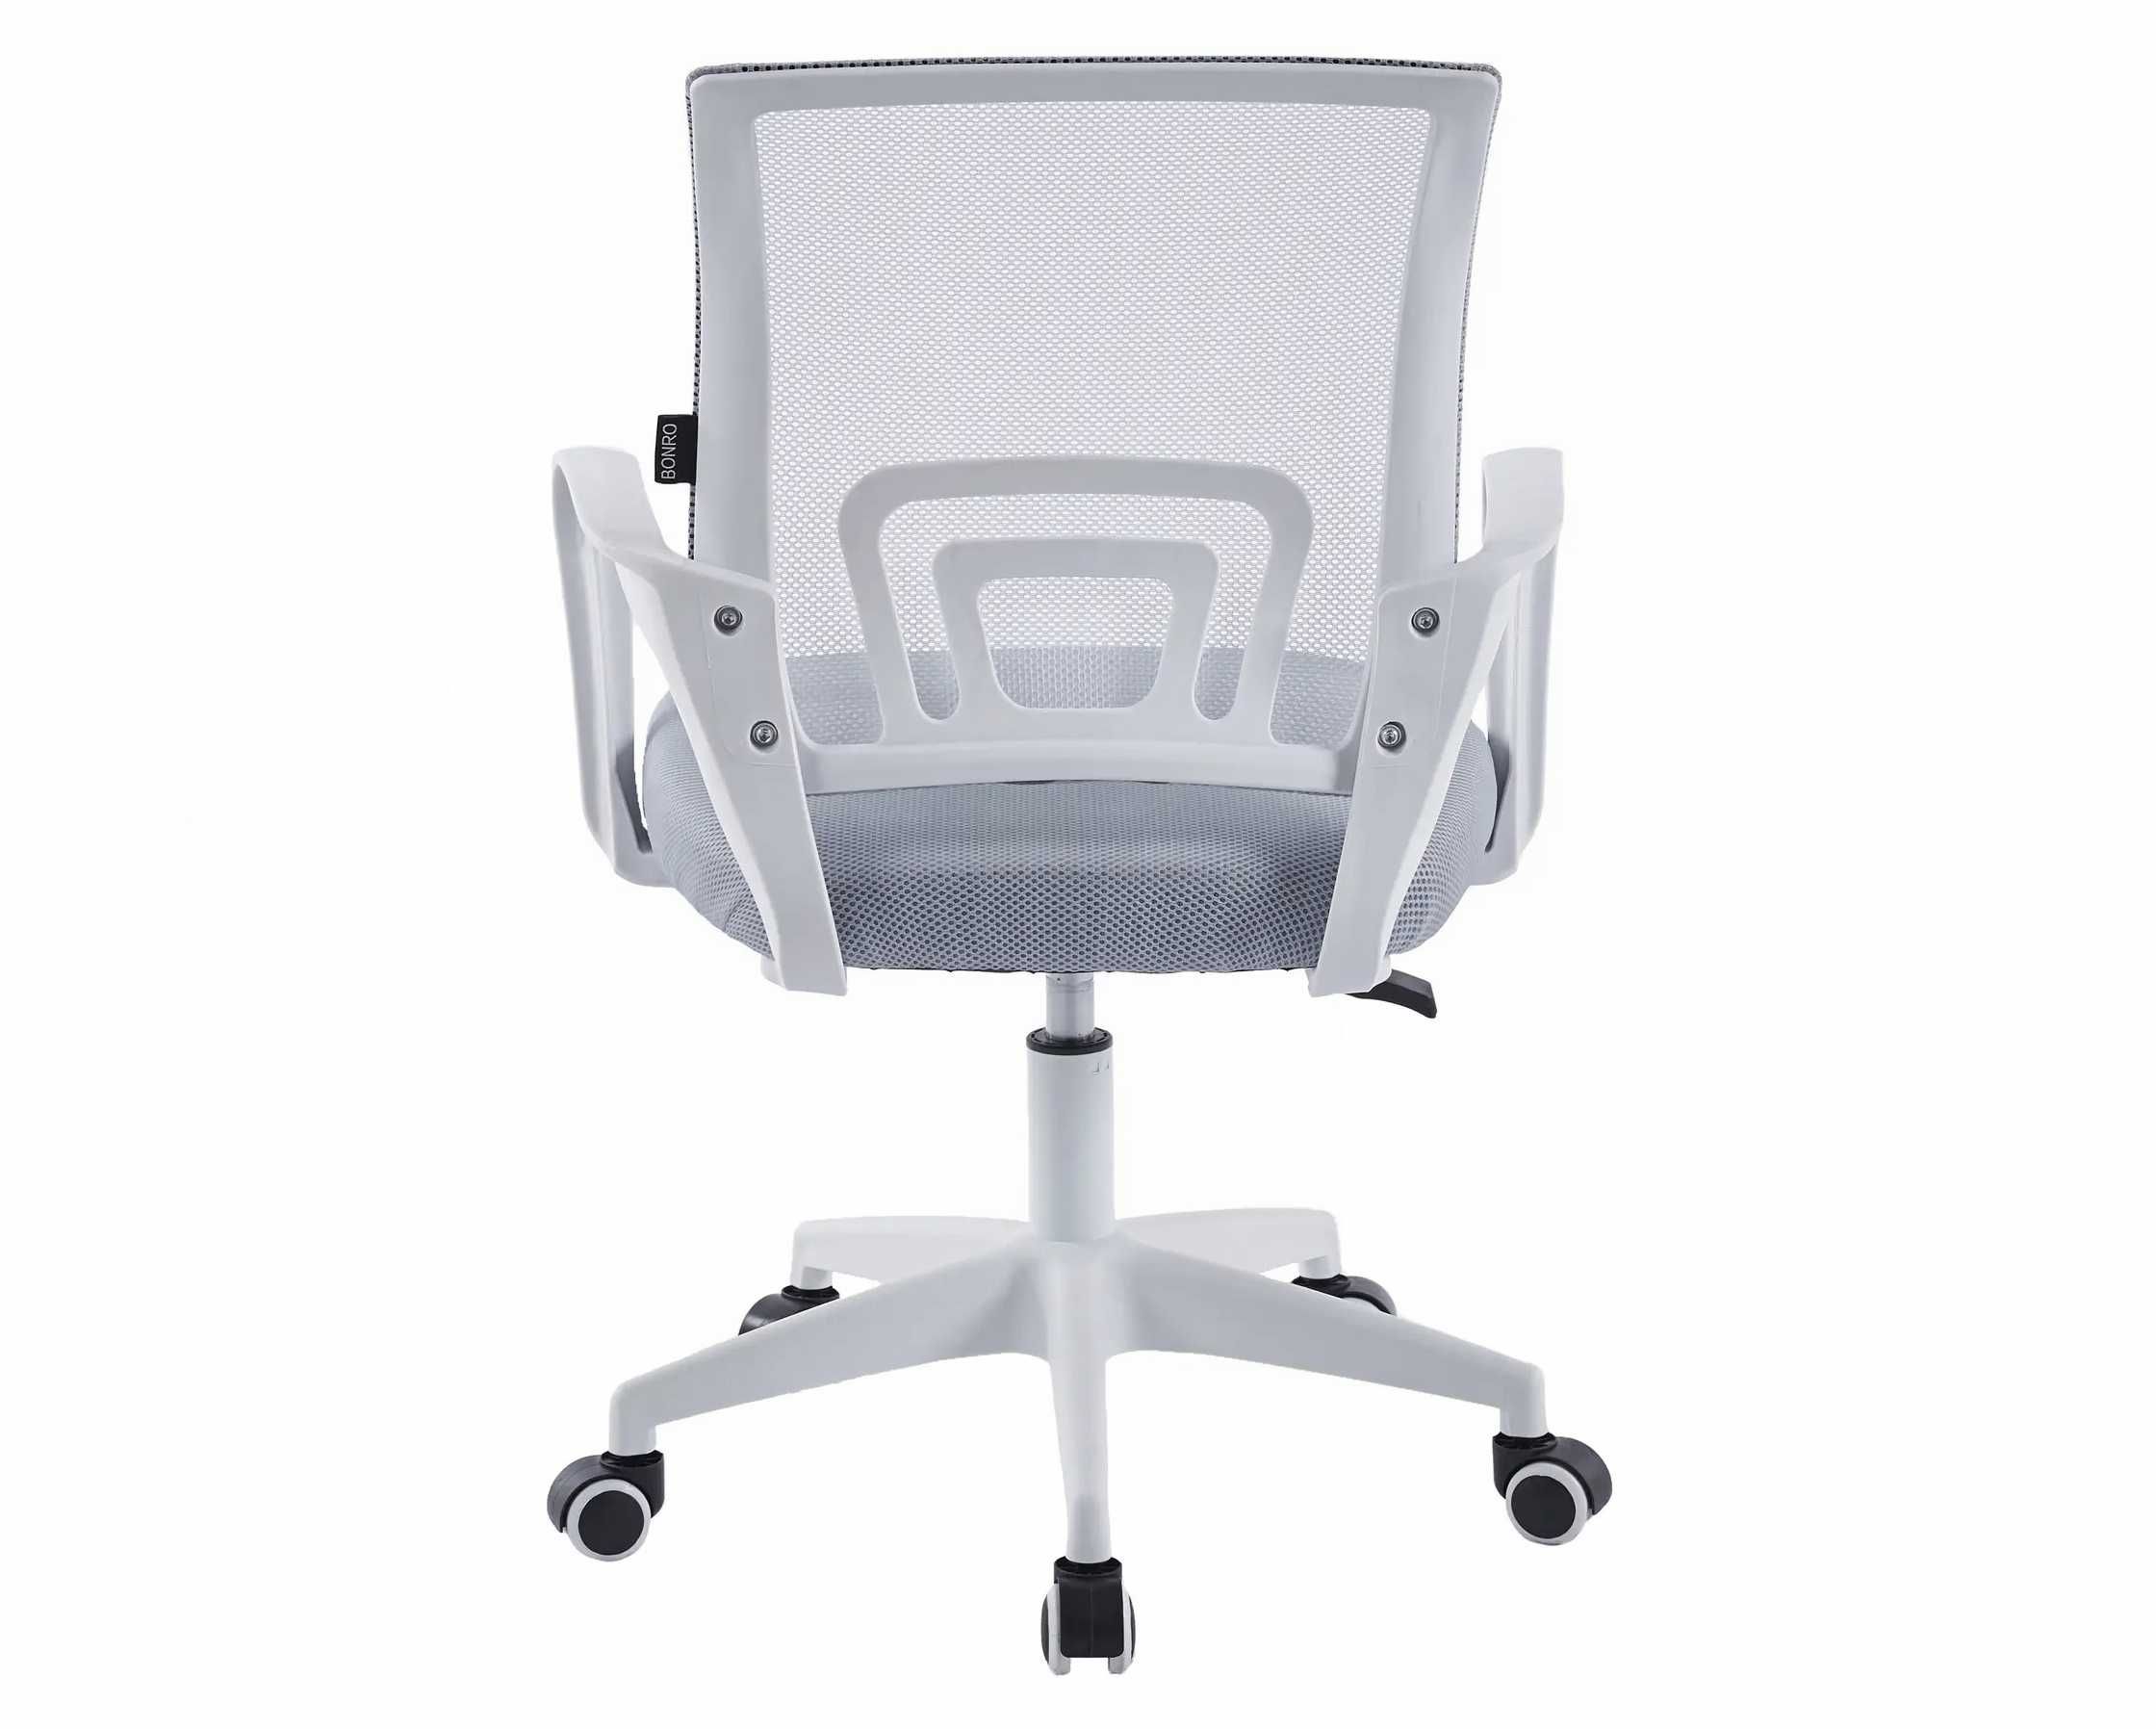 Стул для офиса серый+белый компьютерный на колесах Vertigo кресло